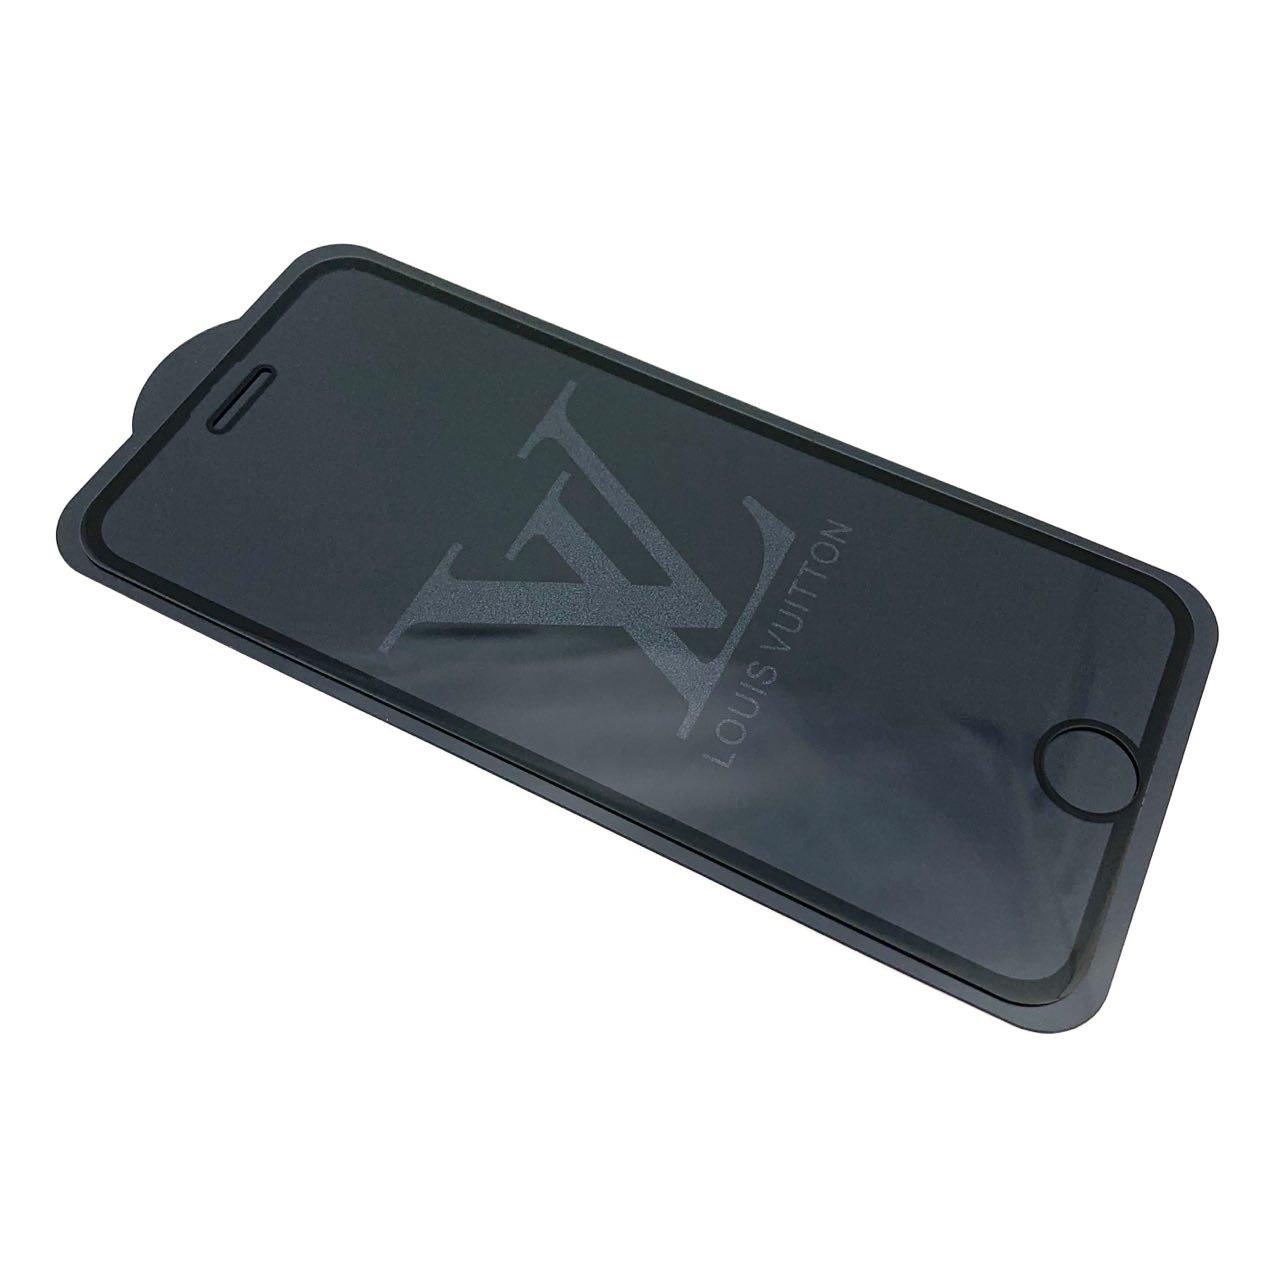 Защитное стекло "9D" GLASS FULL GLUE для APPLE iPhone 7 / 8 (4.7"), с рисунком лого LOUIS VUITTON цвет канта черный.